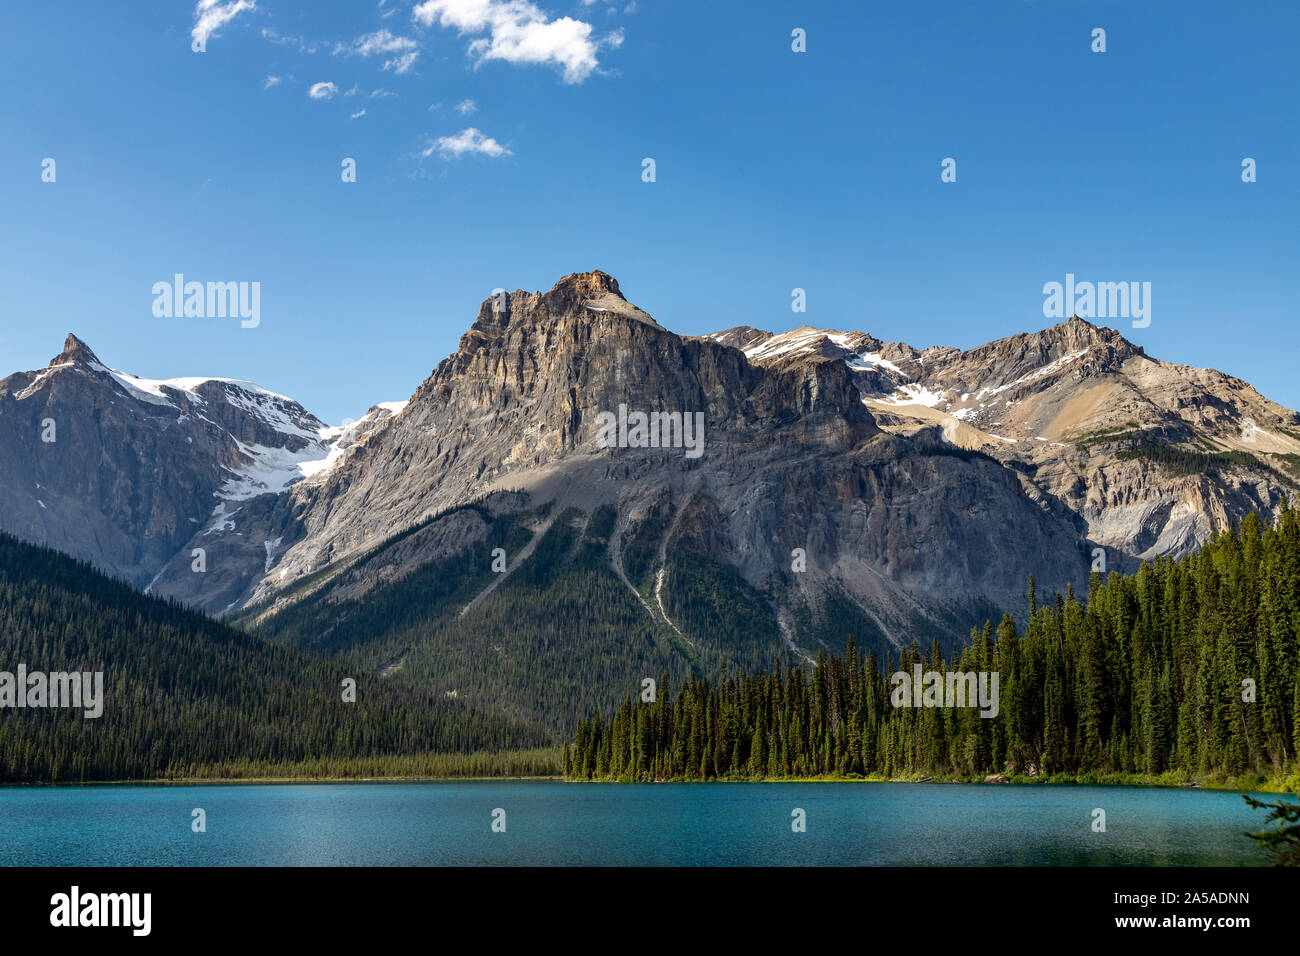 Emeral lake montagnes Rocheuses du Canada Banque D'Images